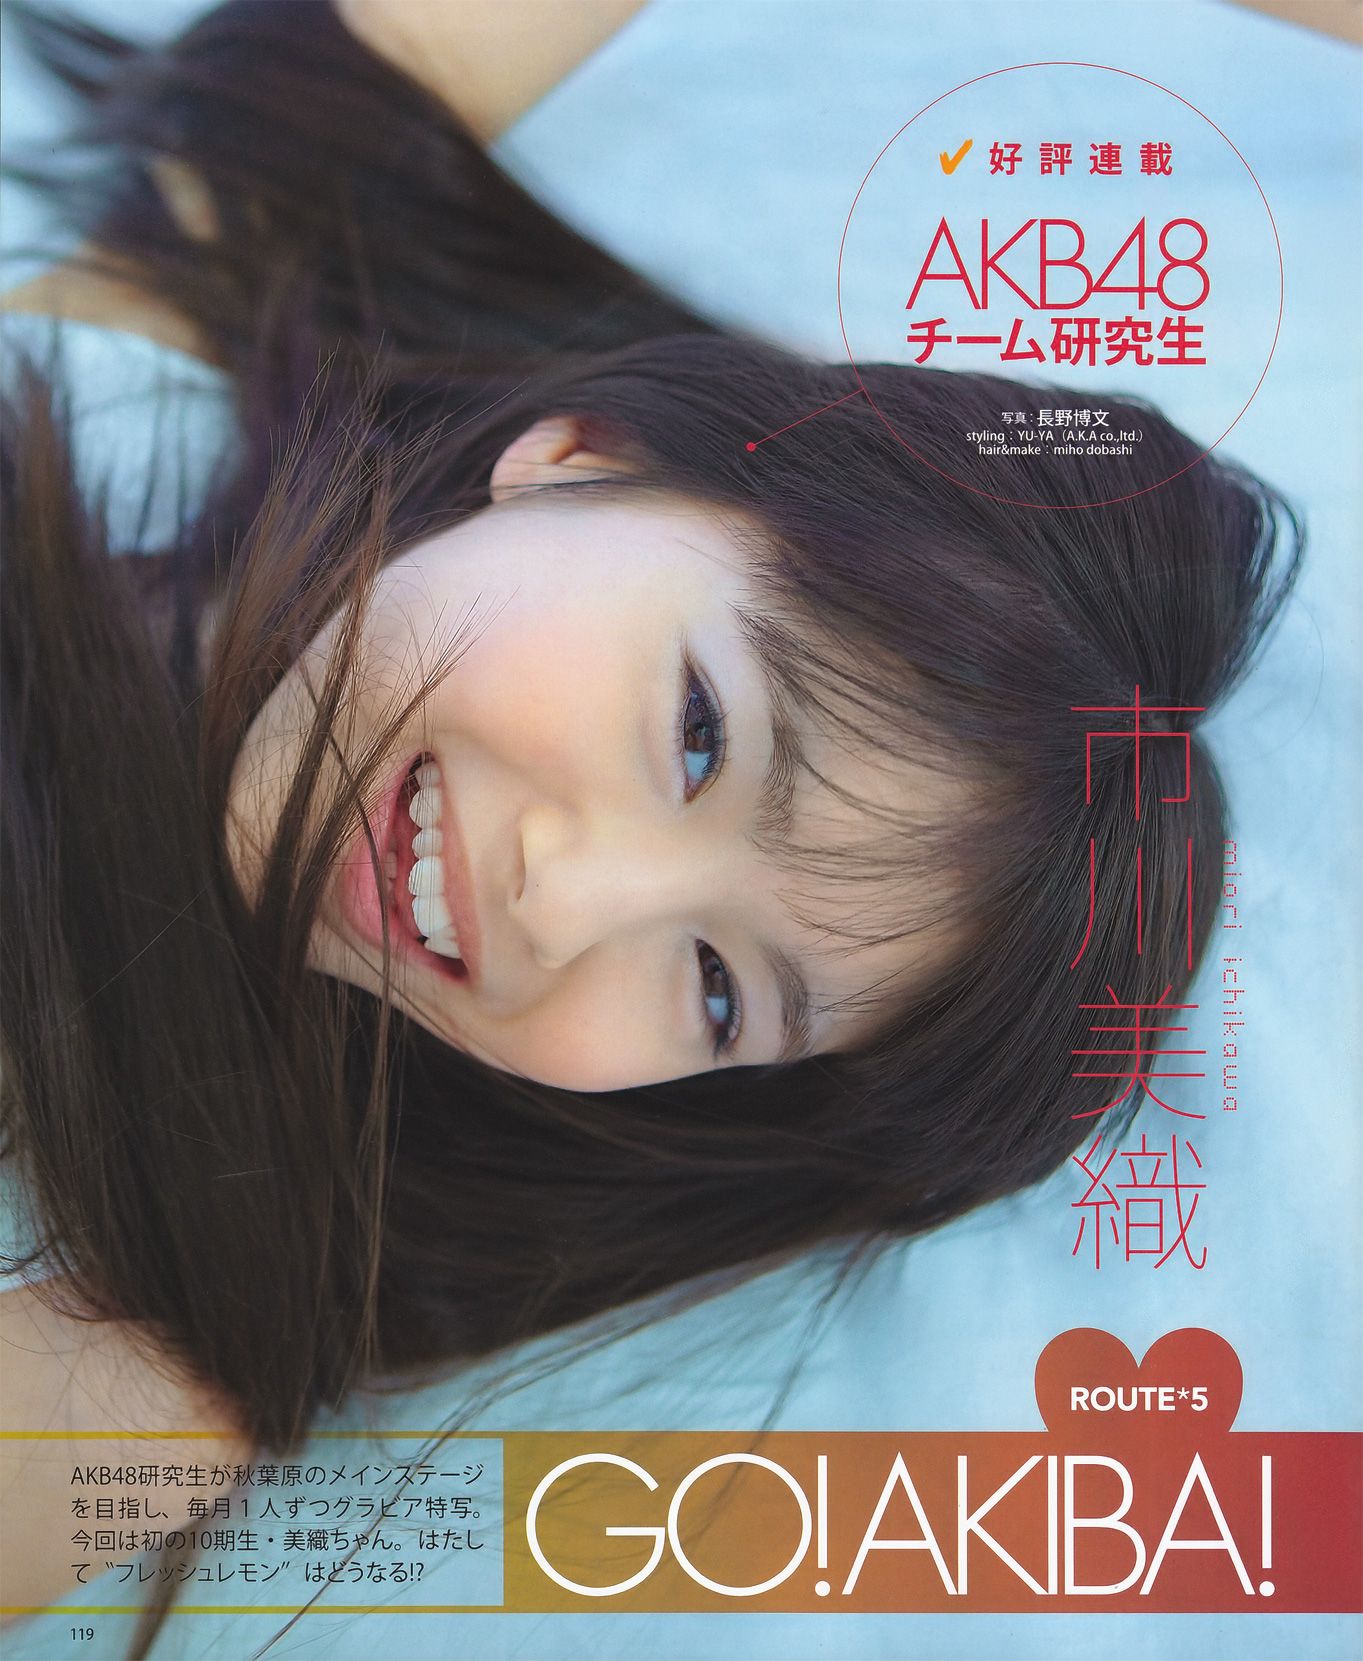 [Bomb.tv套图] 上戸彩 石原さとみ AKB48 中村静香 吉木りさ[BOMB Magazine]合集3